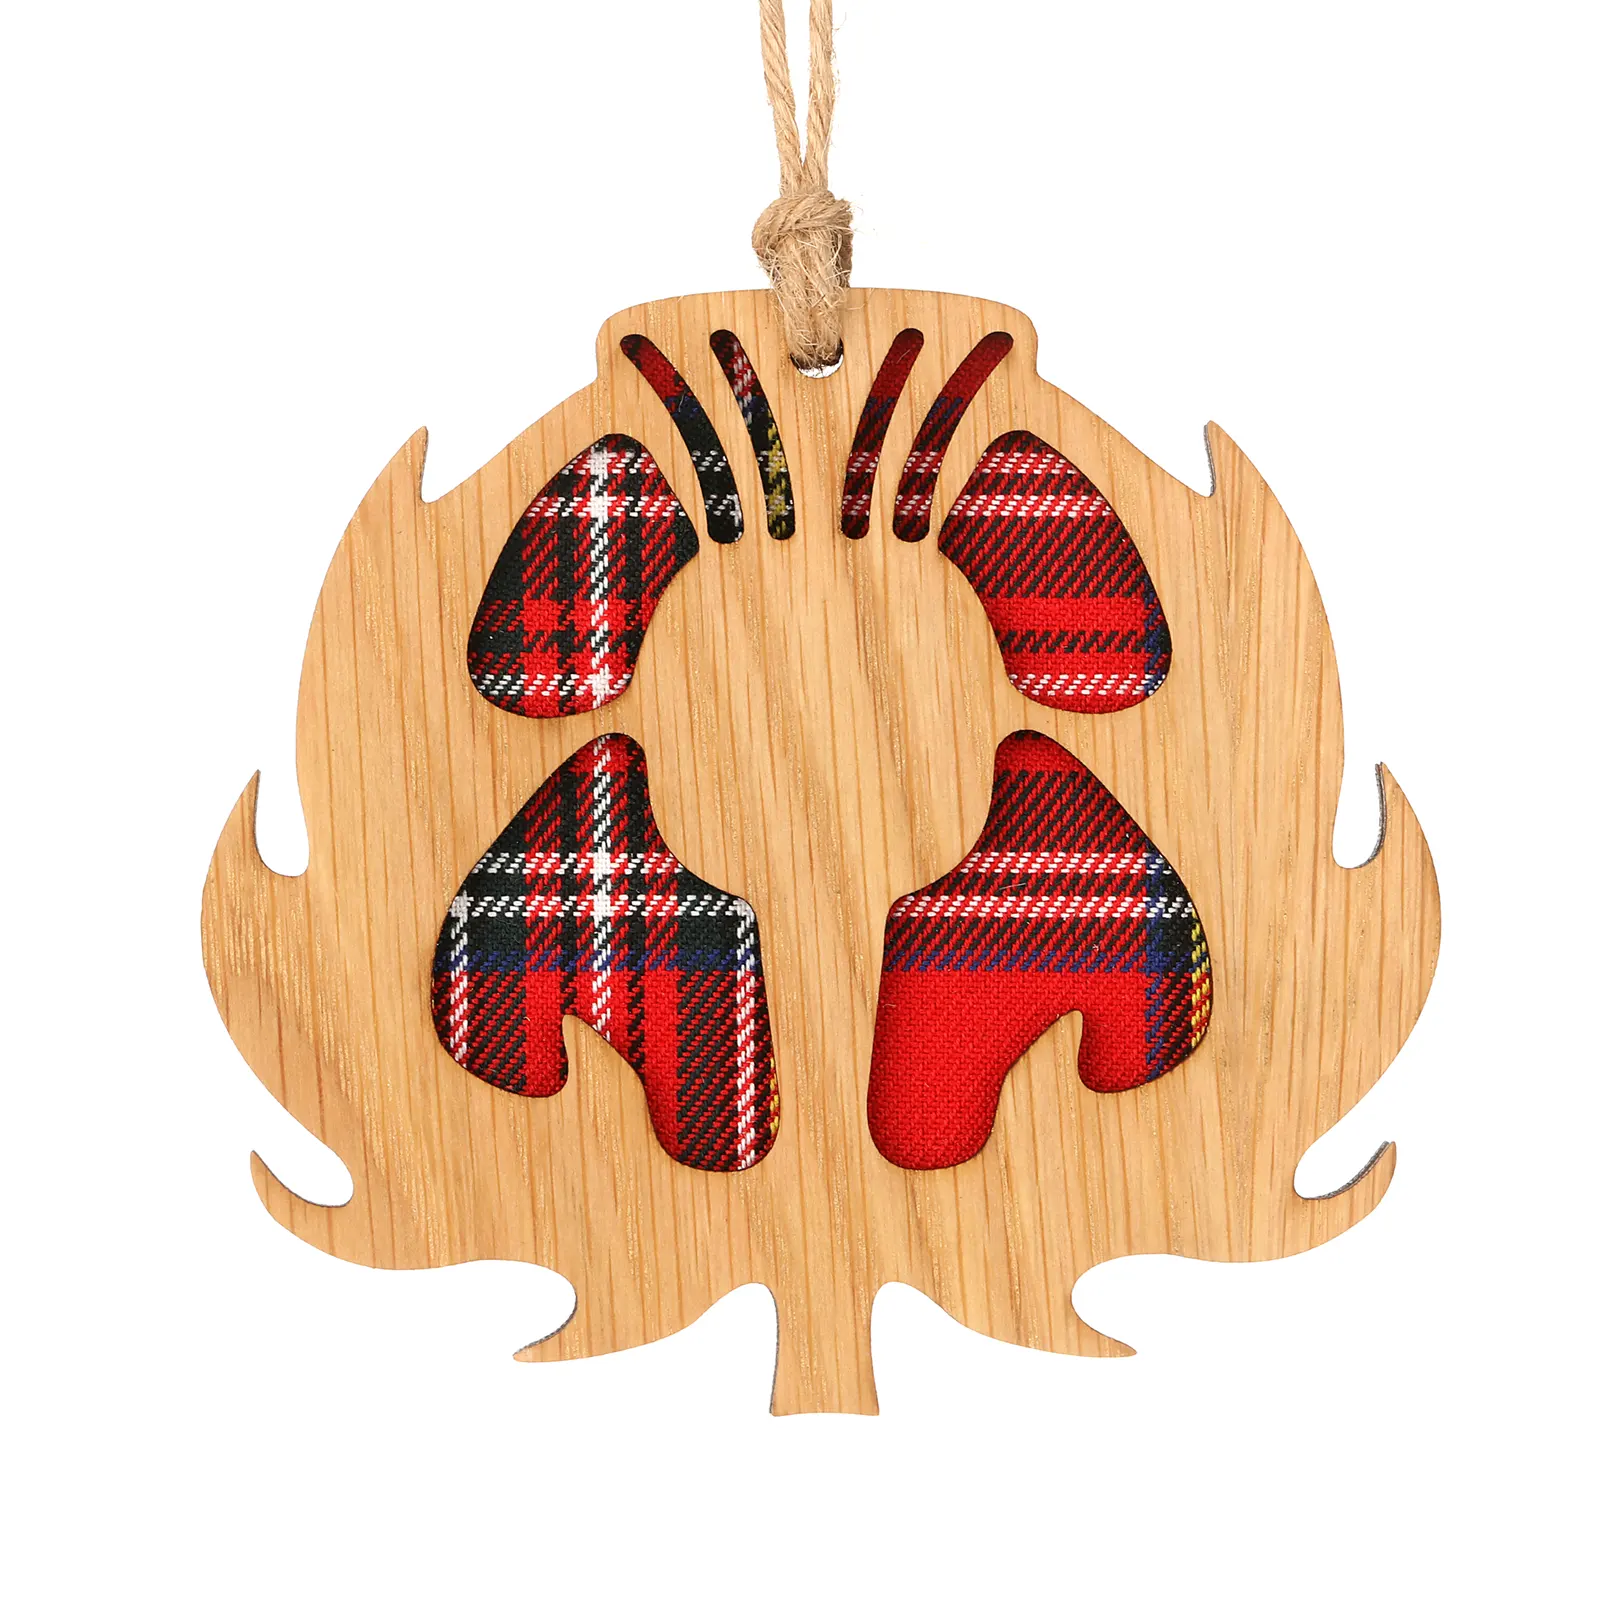 Scottish Thistle - Holz-Aufhänger mit schottischer Distel und Tartan-Hintergrund